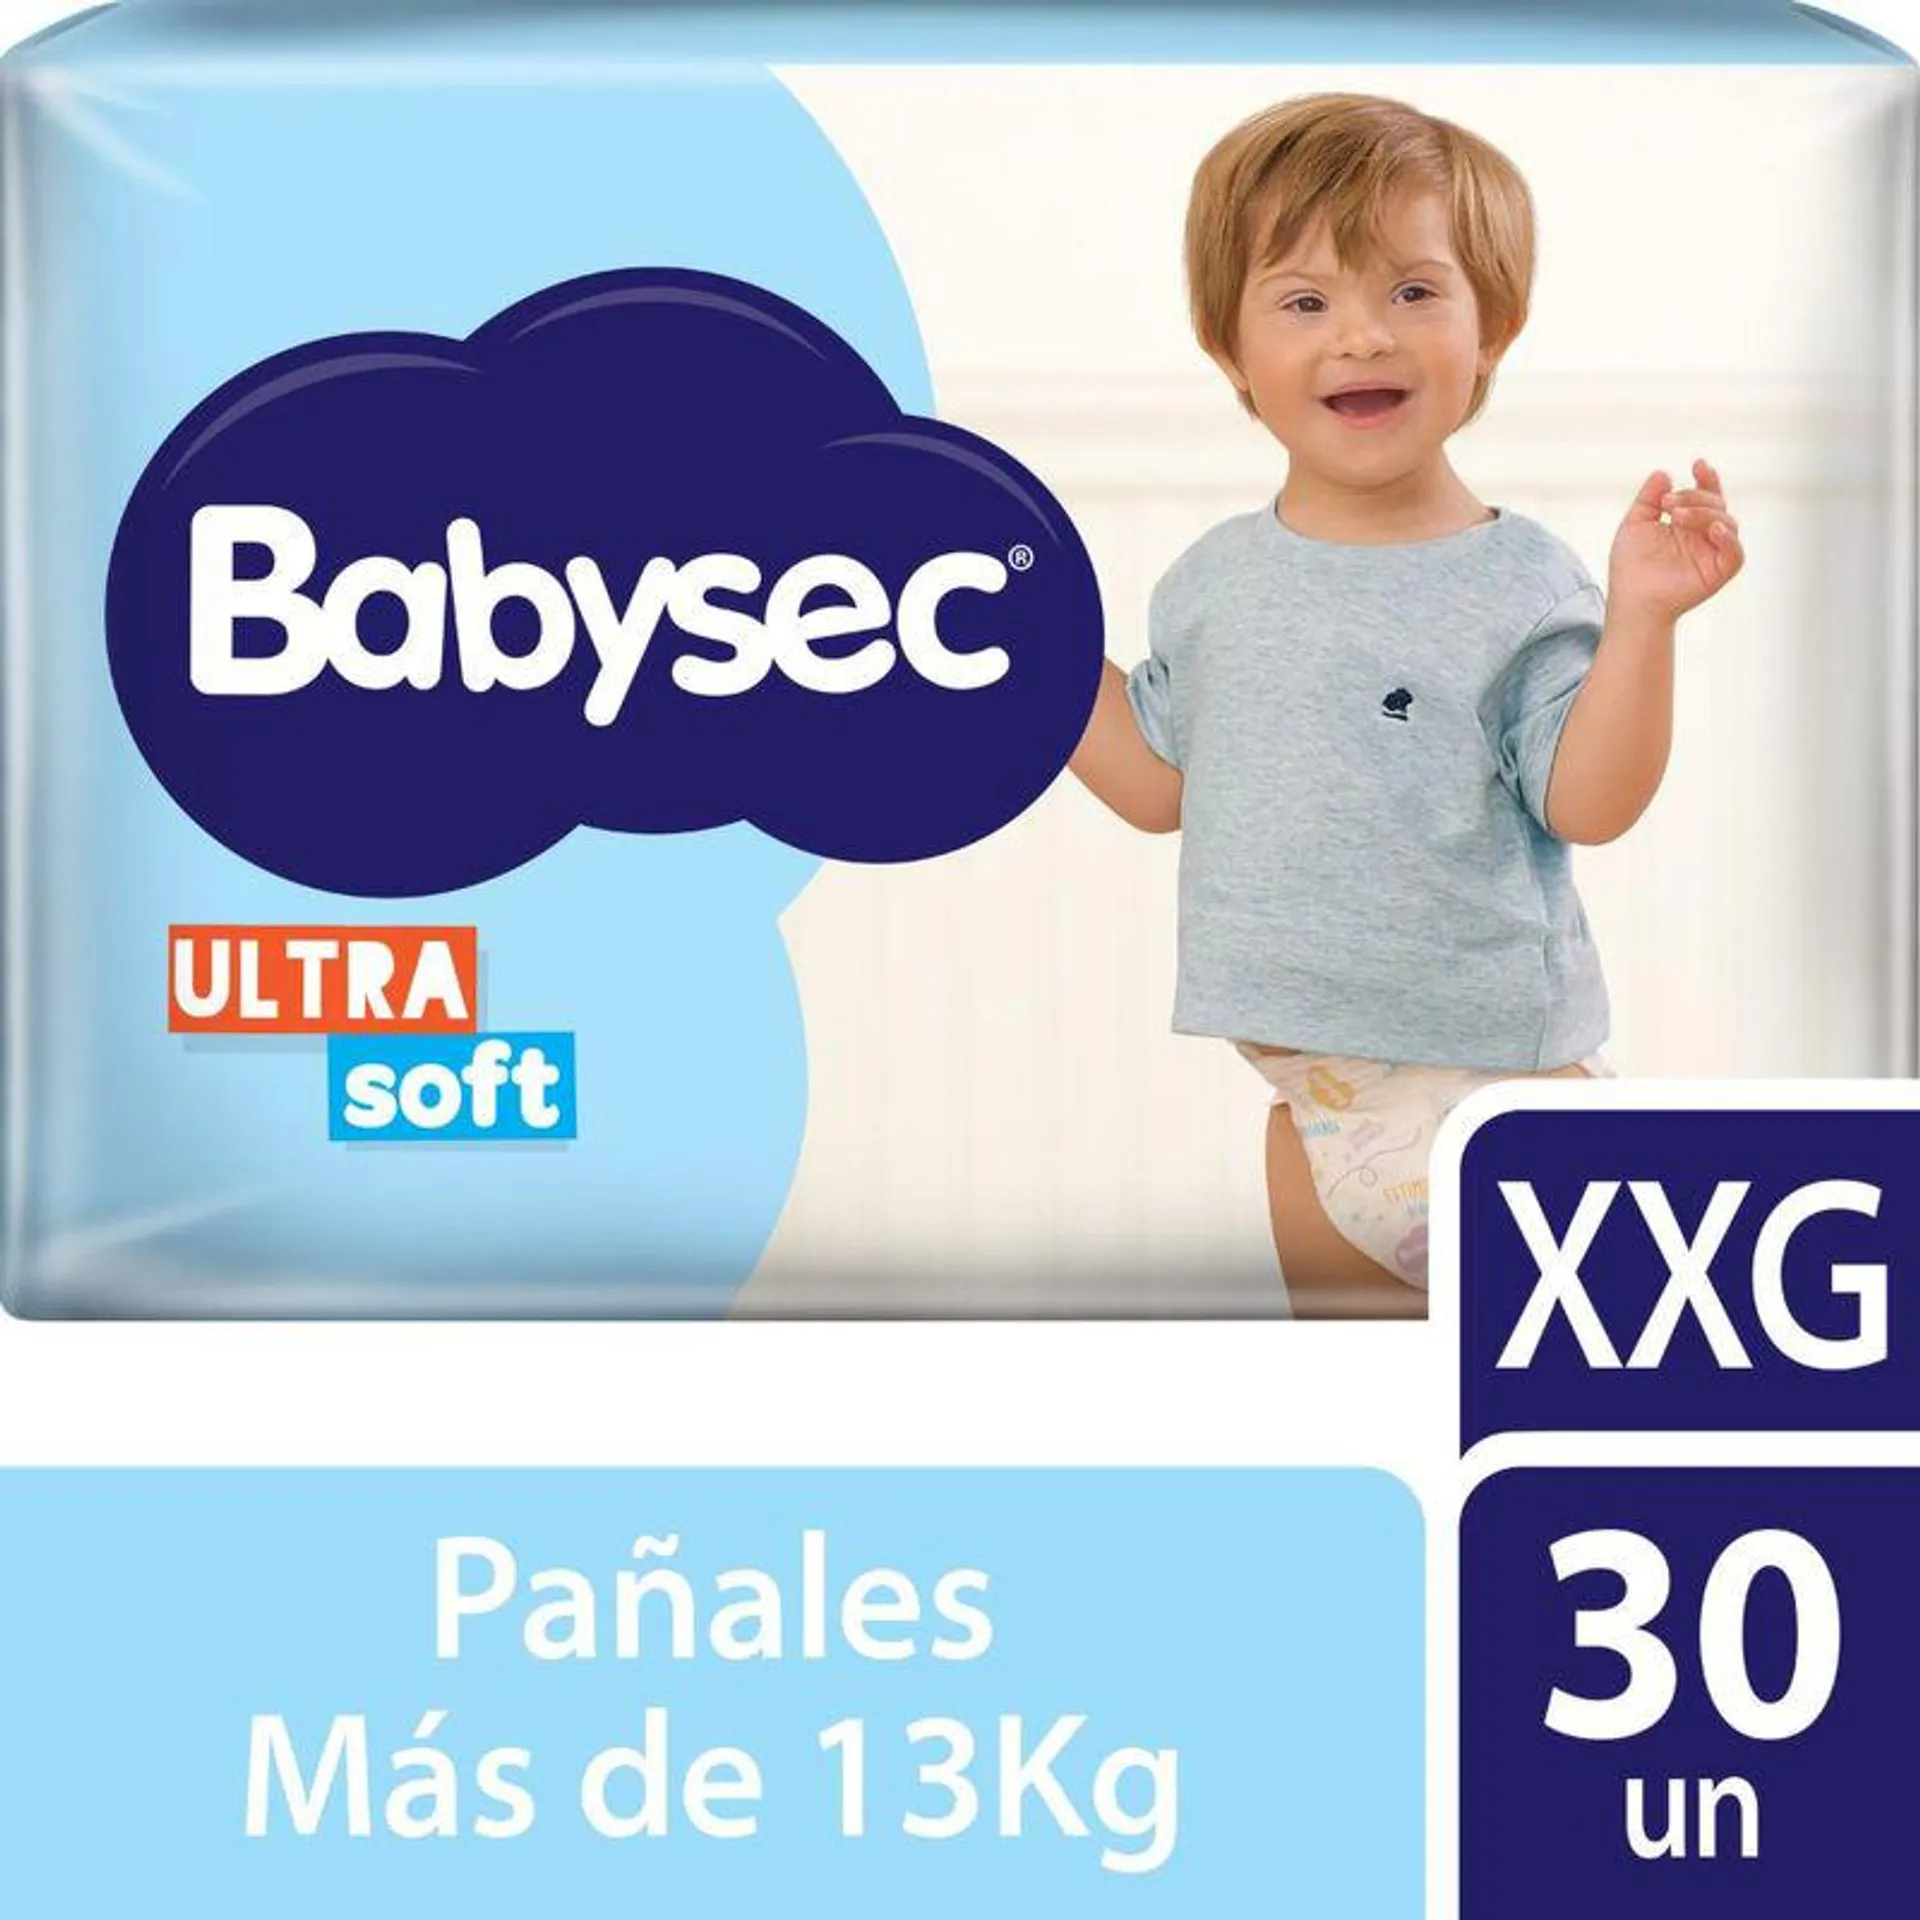 Pañales Babysec Ultrasoft talle XXG x 30 Ud.